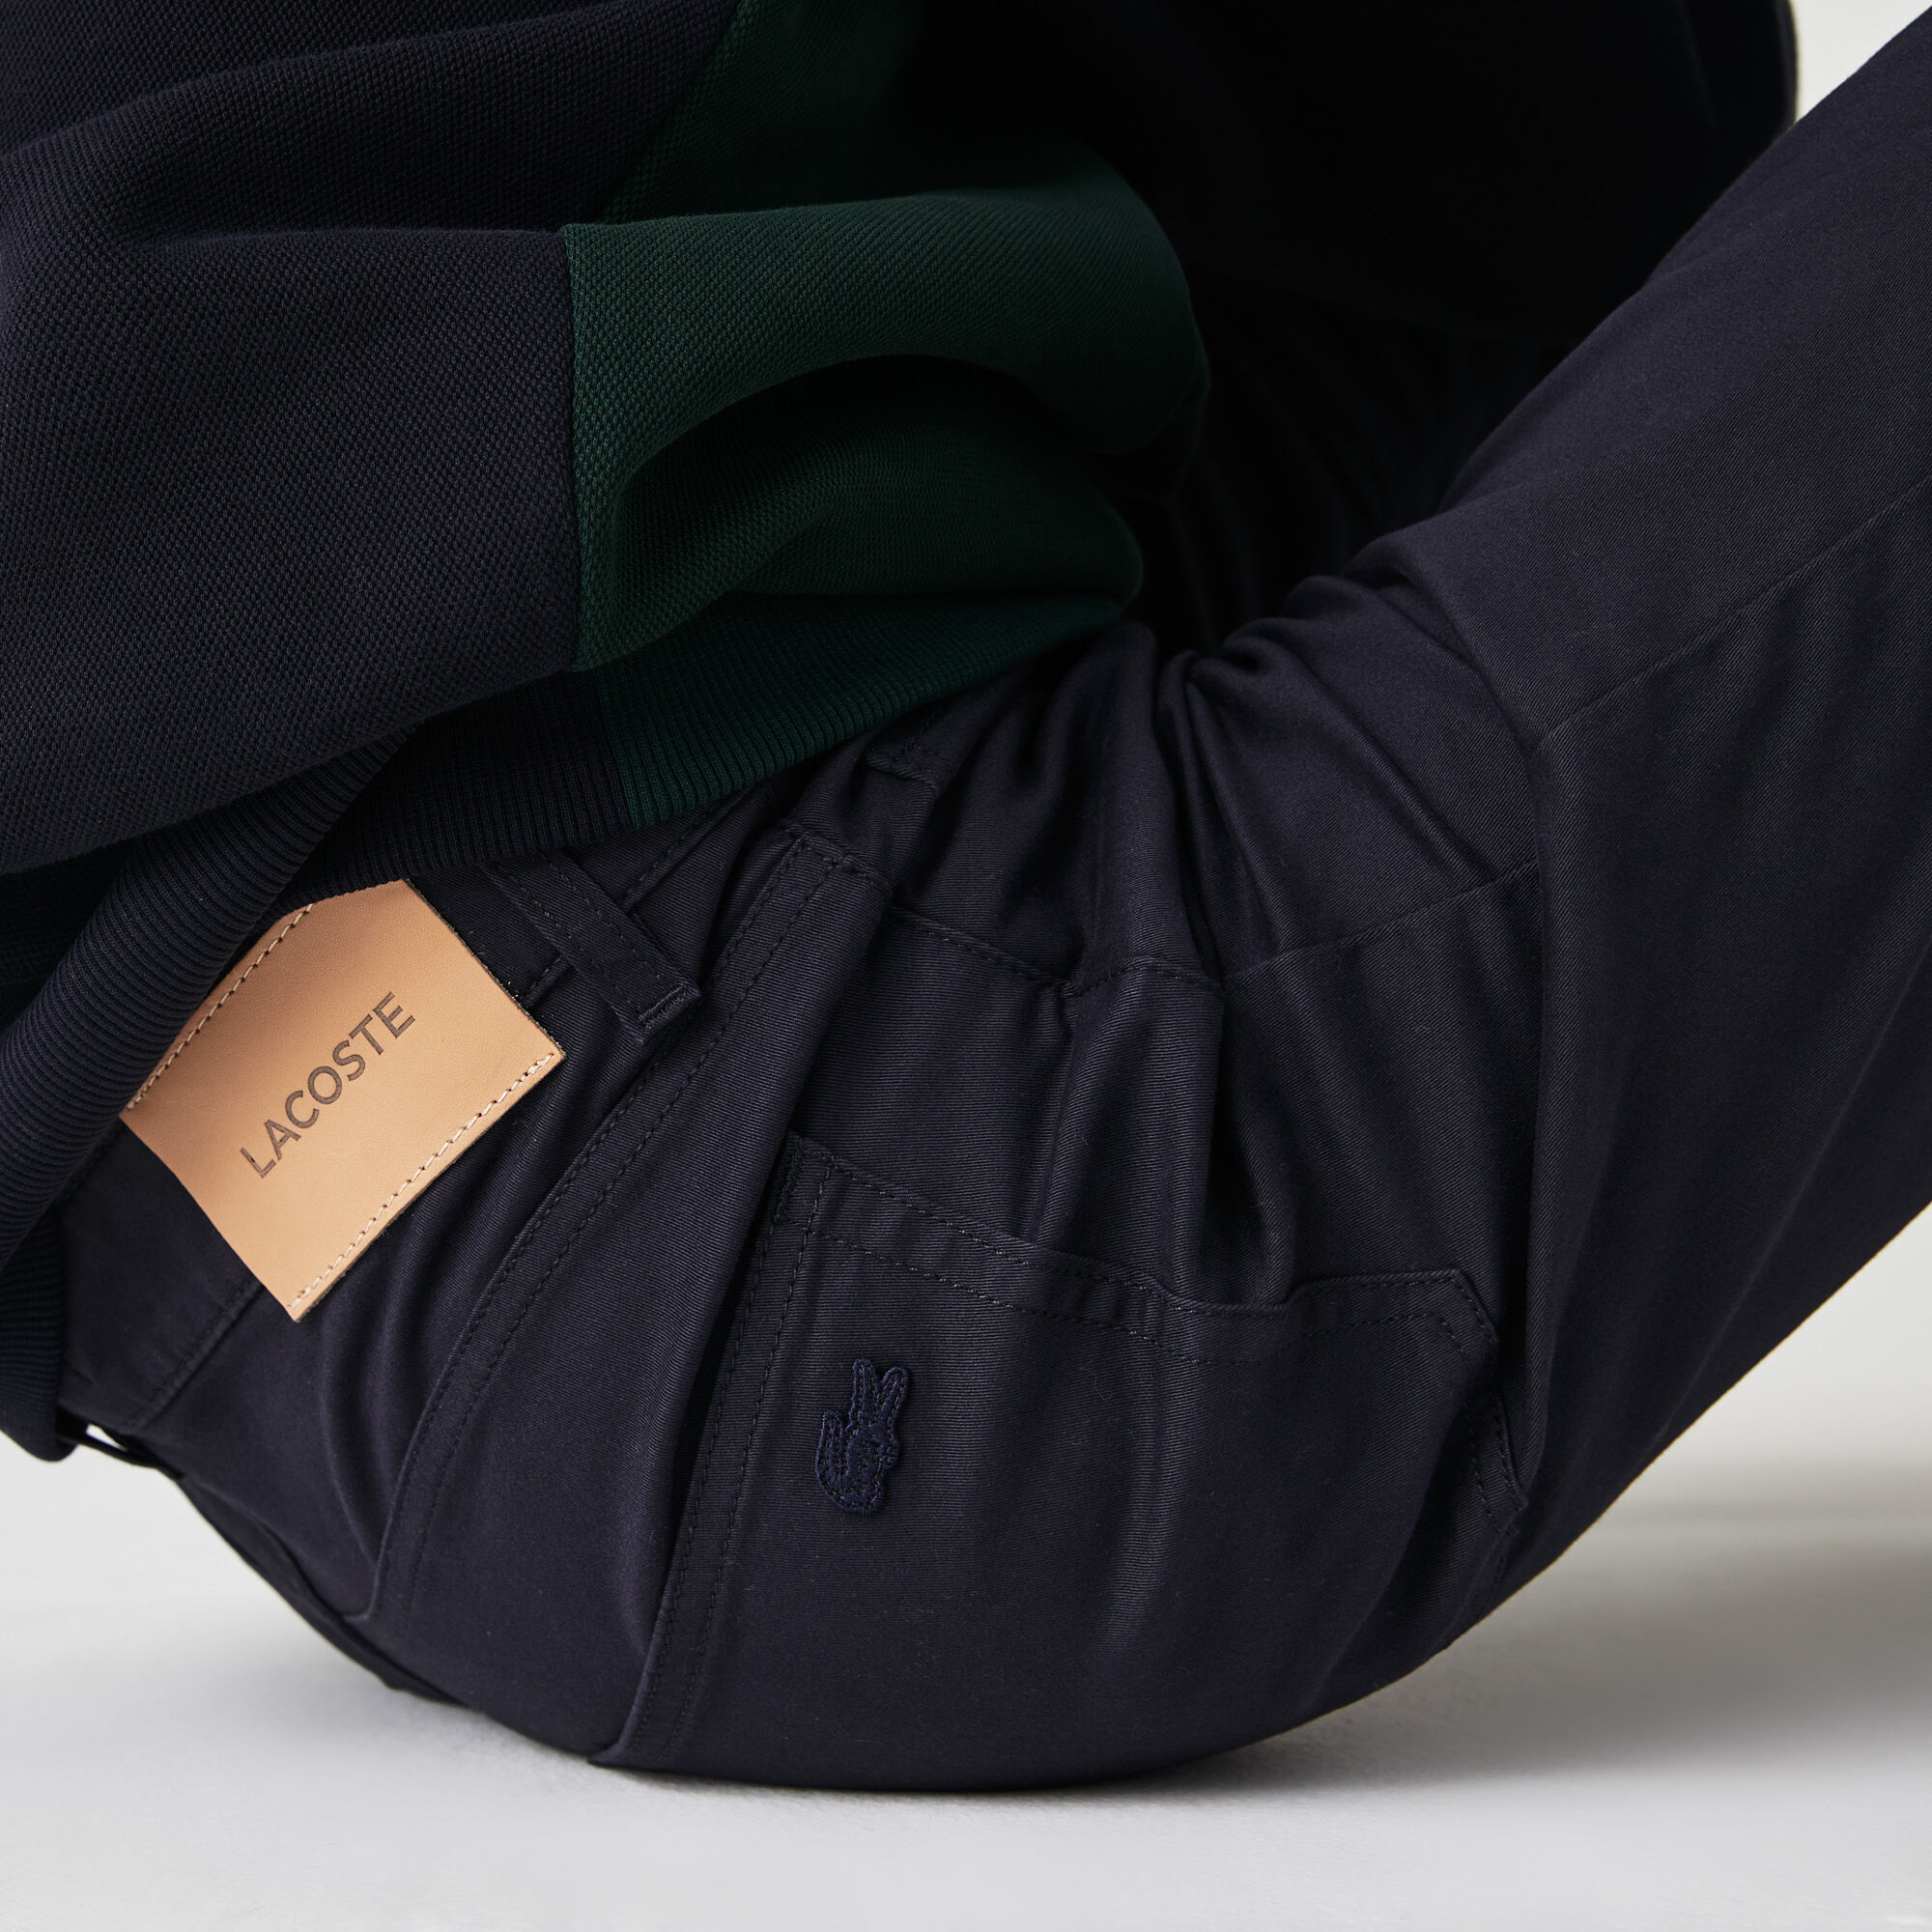 Men's Slim Fit 5-Pocket Stretch Cotton Pants